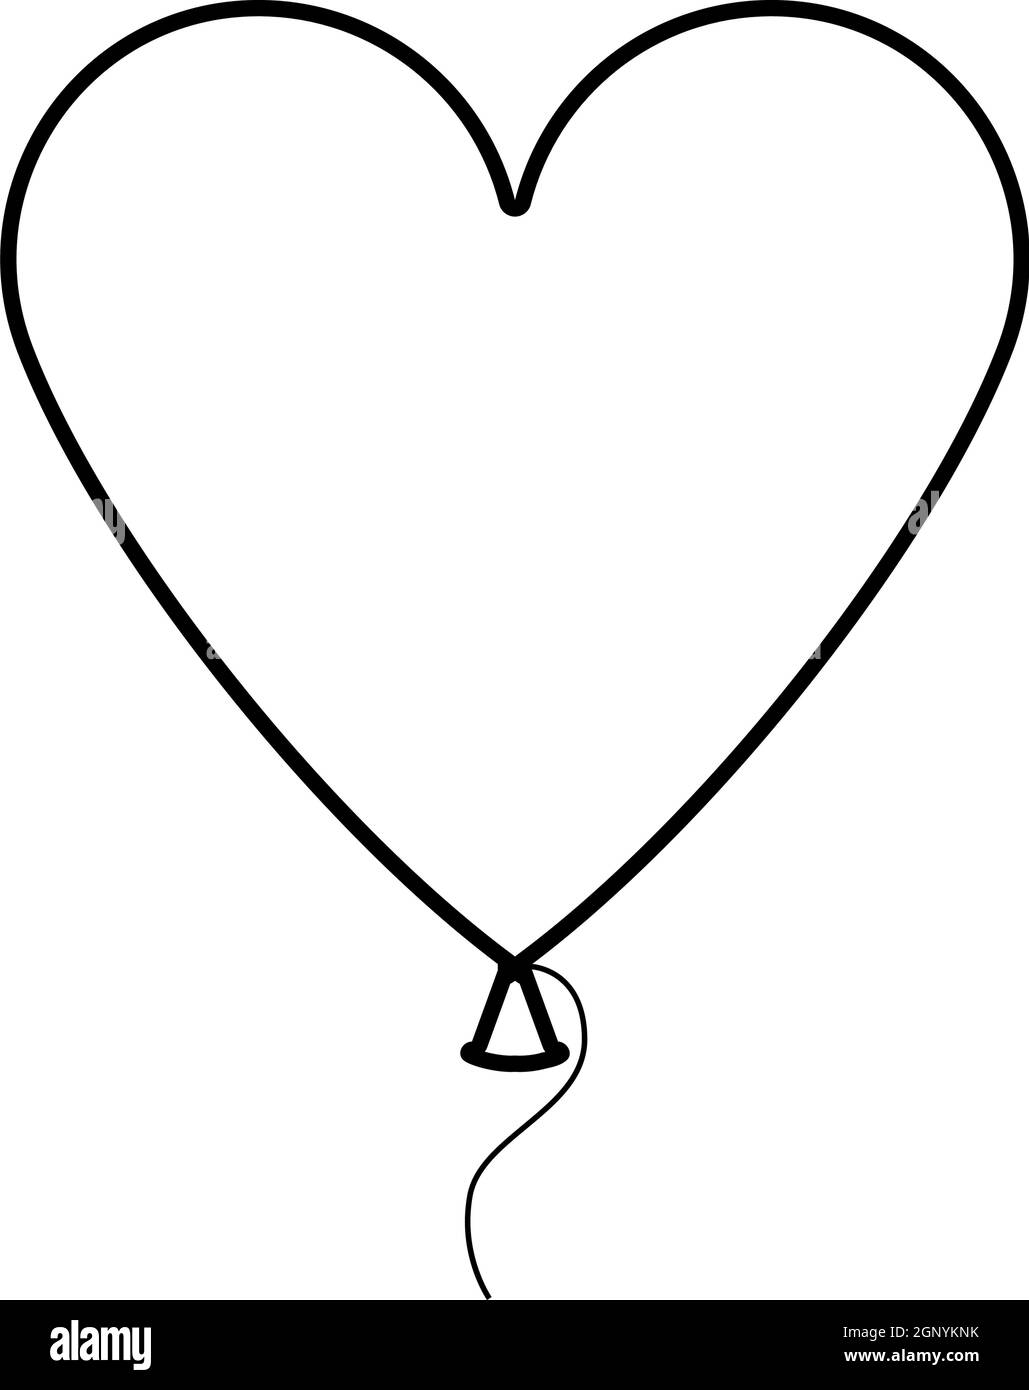 Heart Shape Balloon Icon Stock Vector